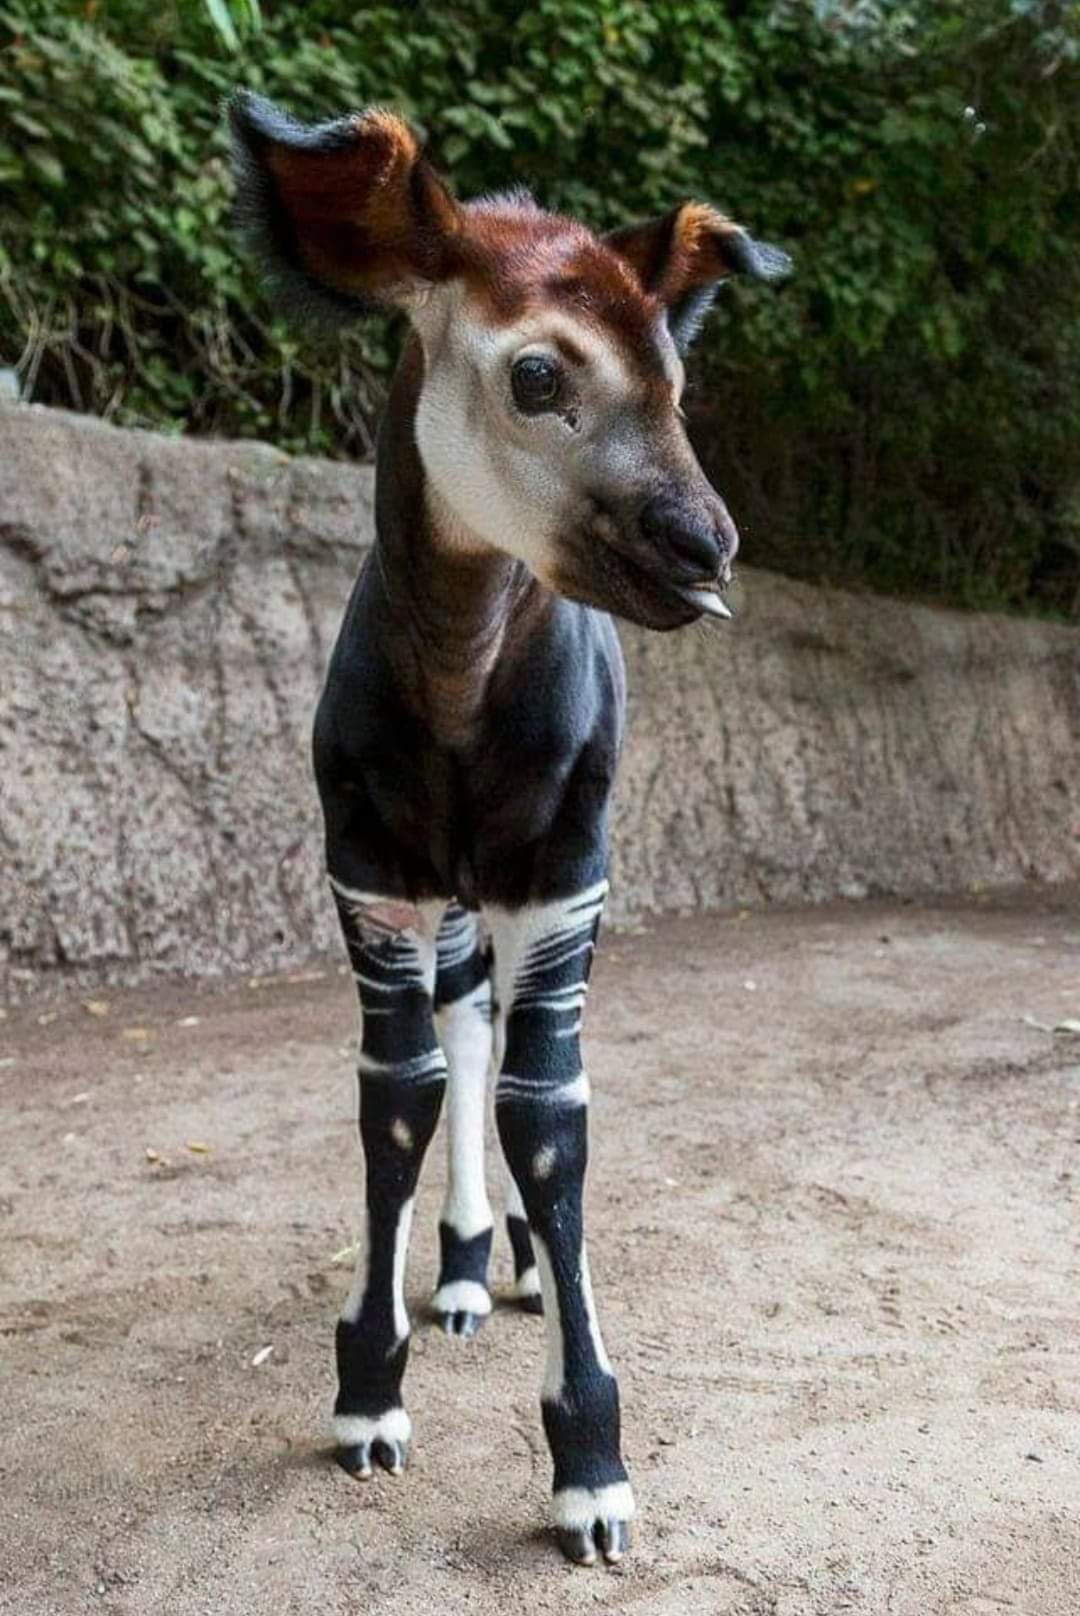 The Zebra Giraffe - Okapi . Strange & Unique Animals - TimsWWW